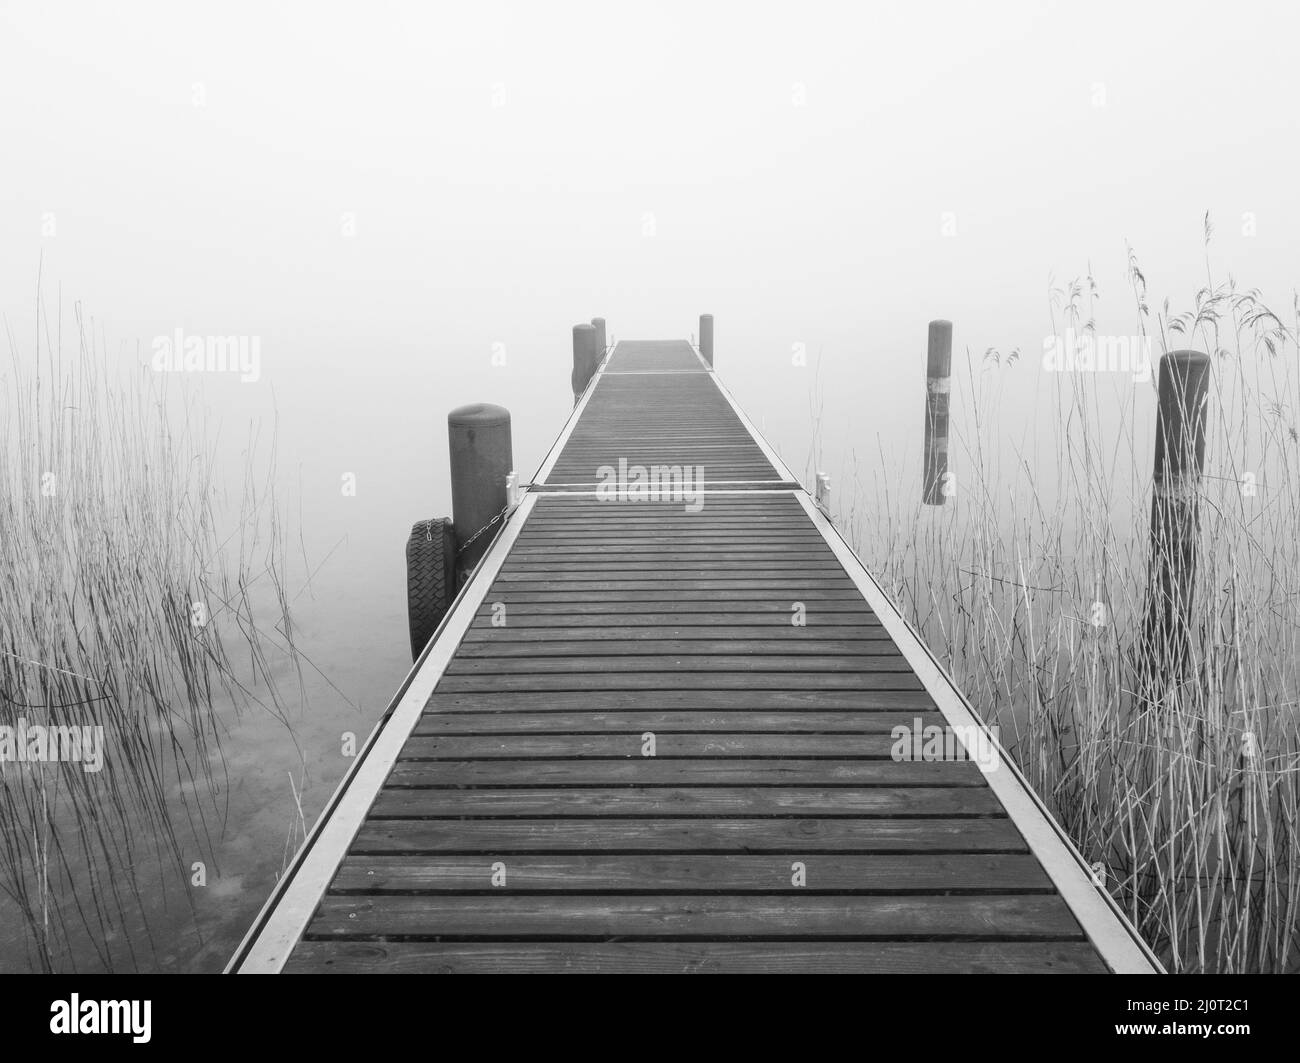 La jetée sur le lac brumeux, dans des tons de gris Banque D'Images